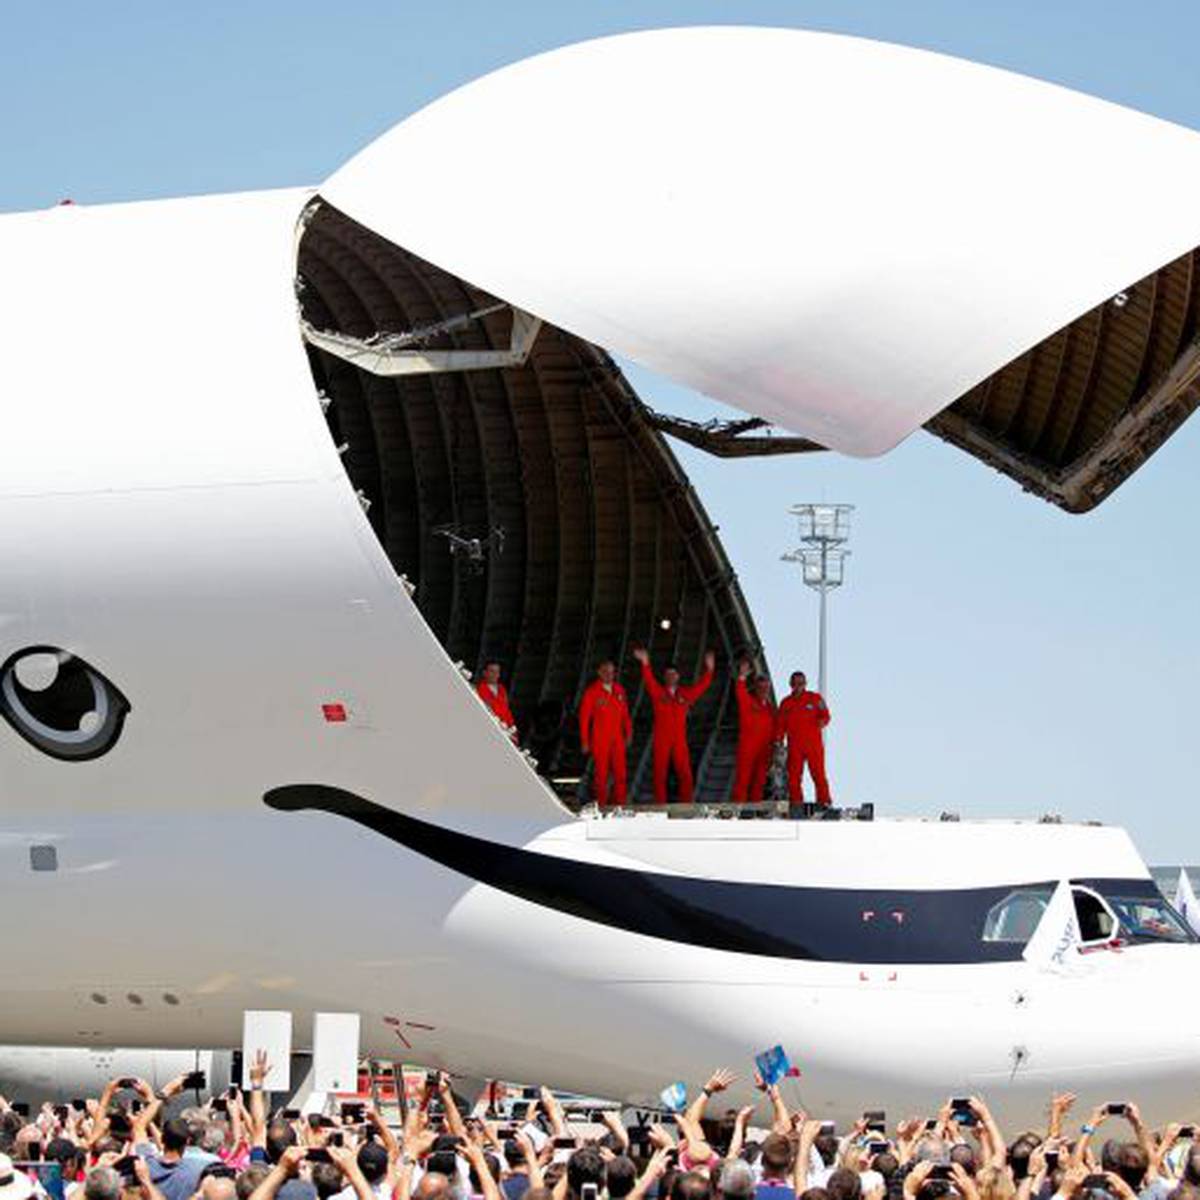 El Beluga XL de Airbus. El nacimiento de una nueva generación.